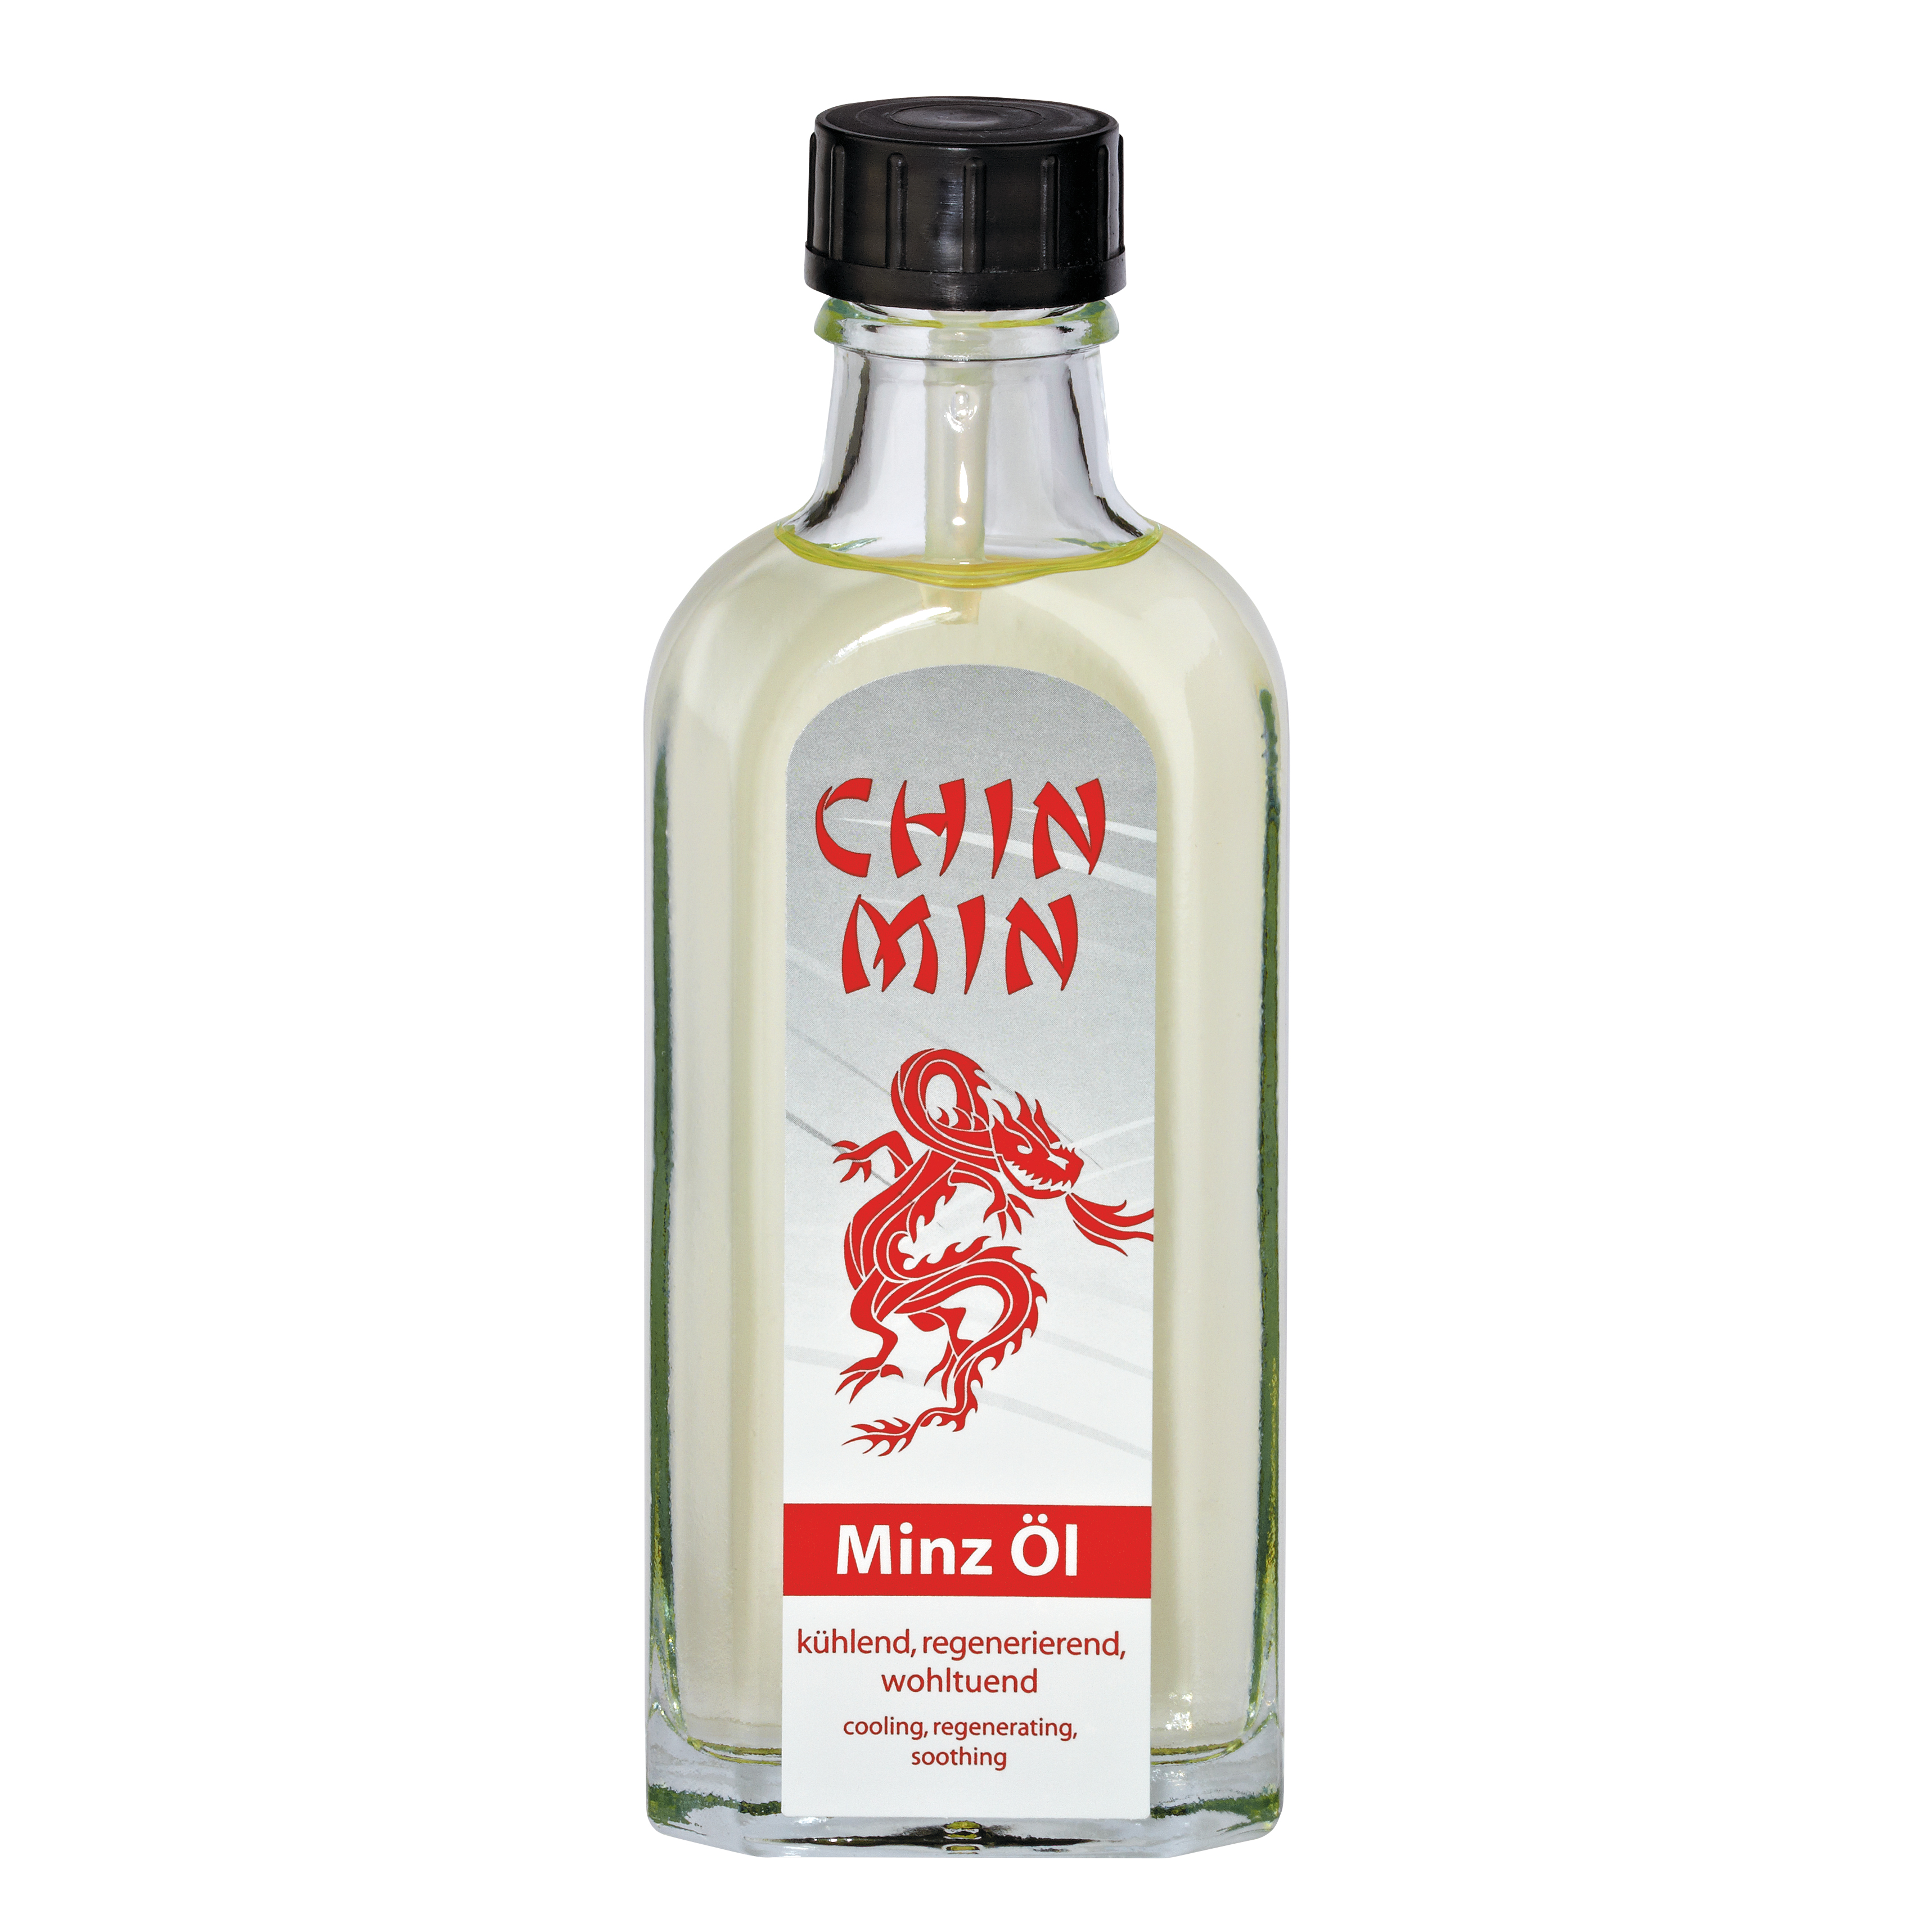 Chin Min Öl 100ml